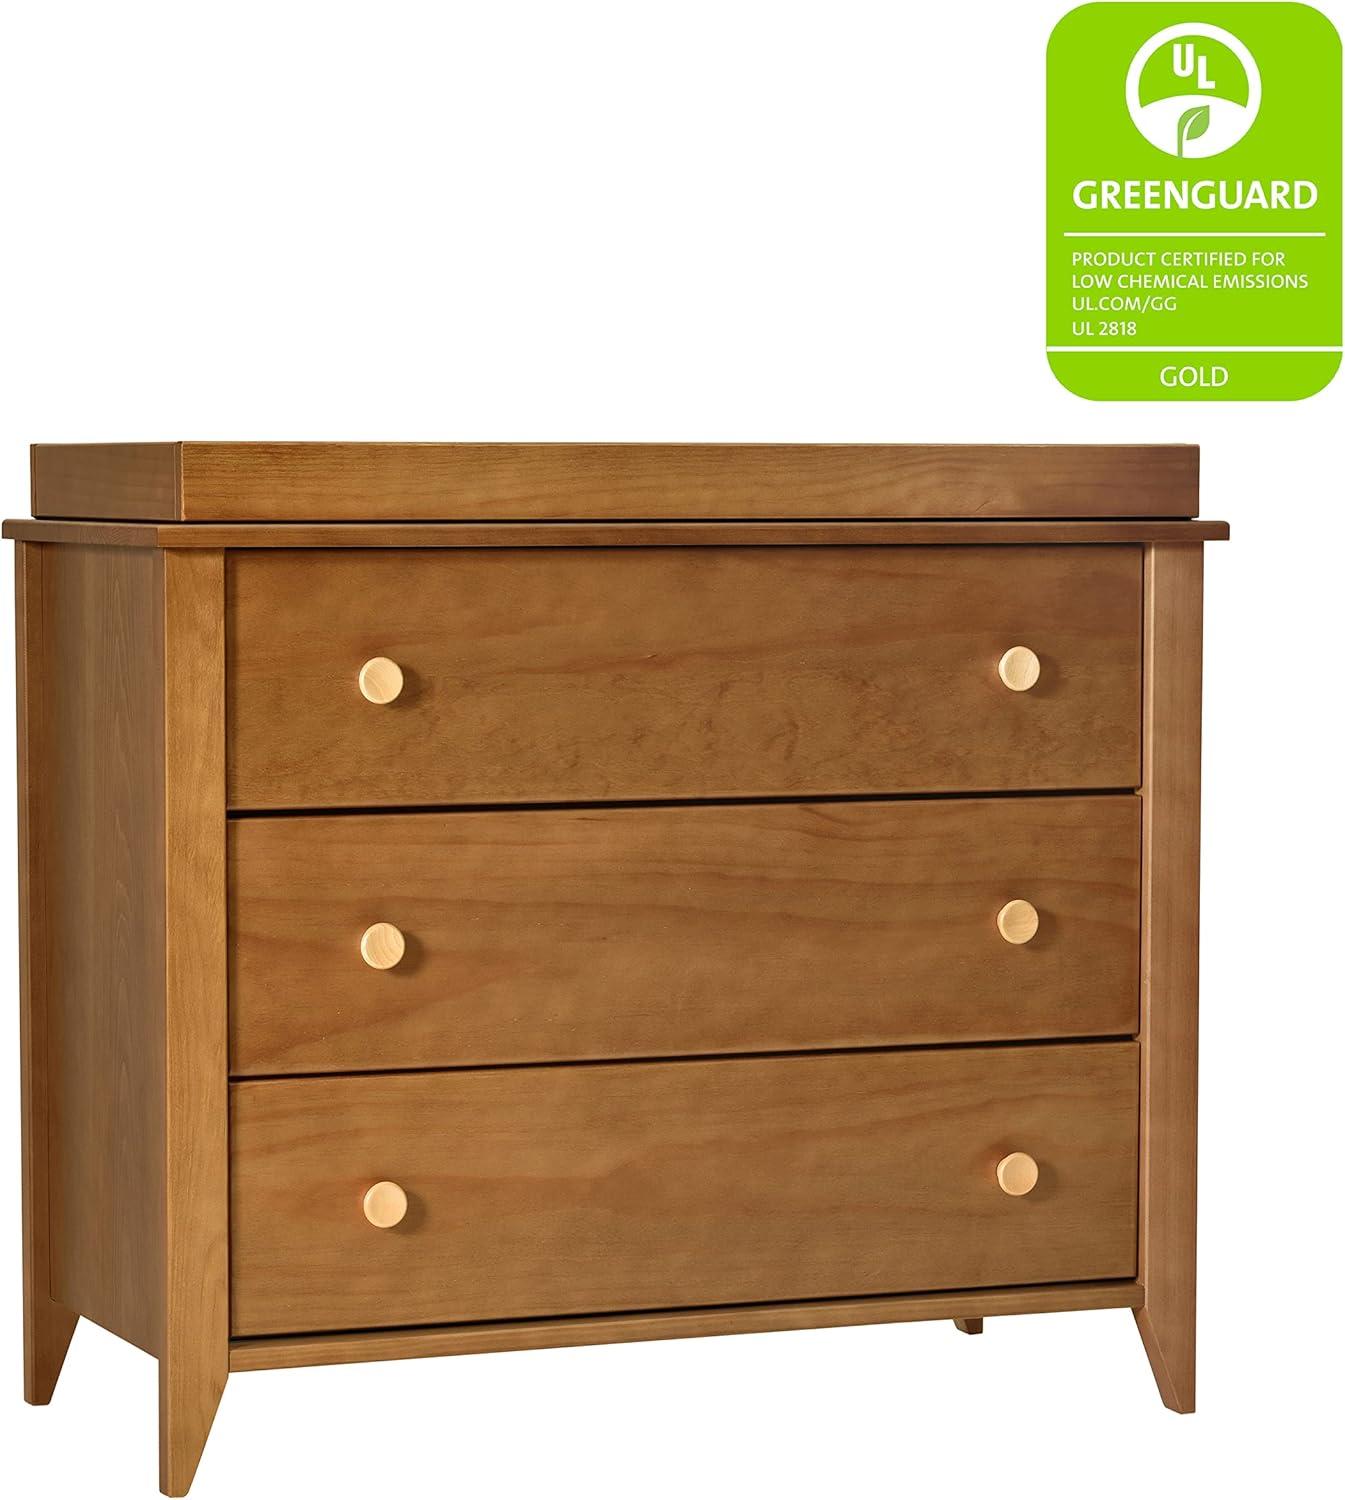 Sprout 3-Drawer Mid-Century Modern Changer Dresser in Chestnut/Natural